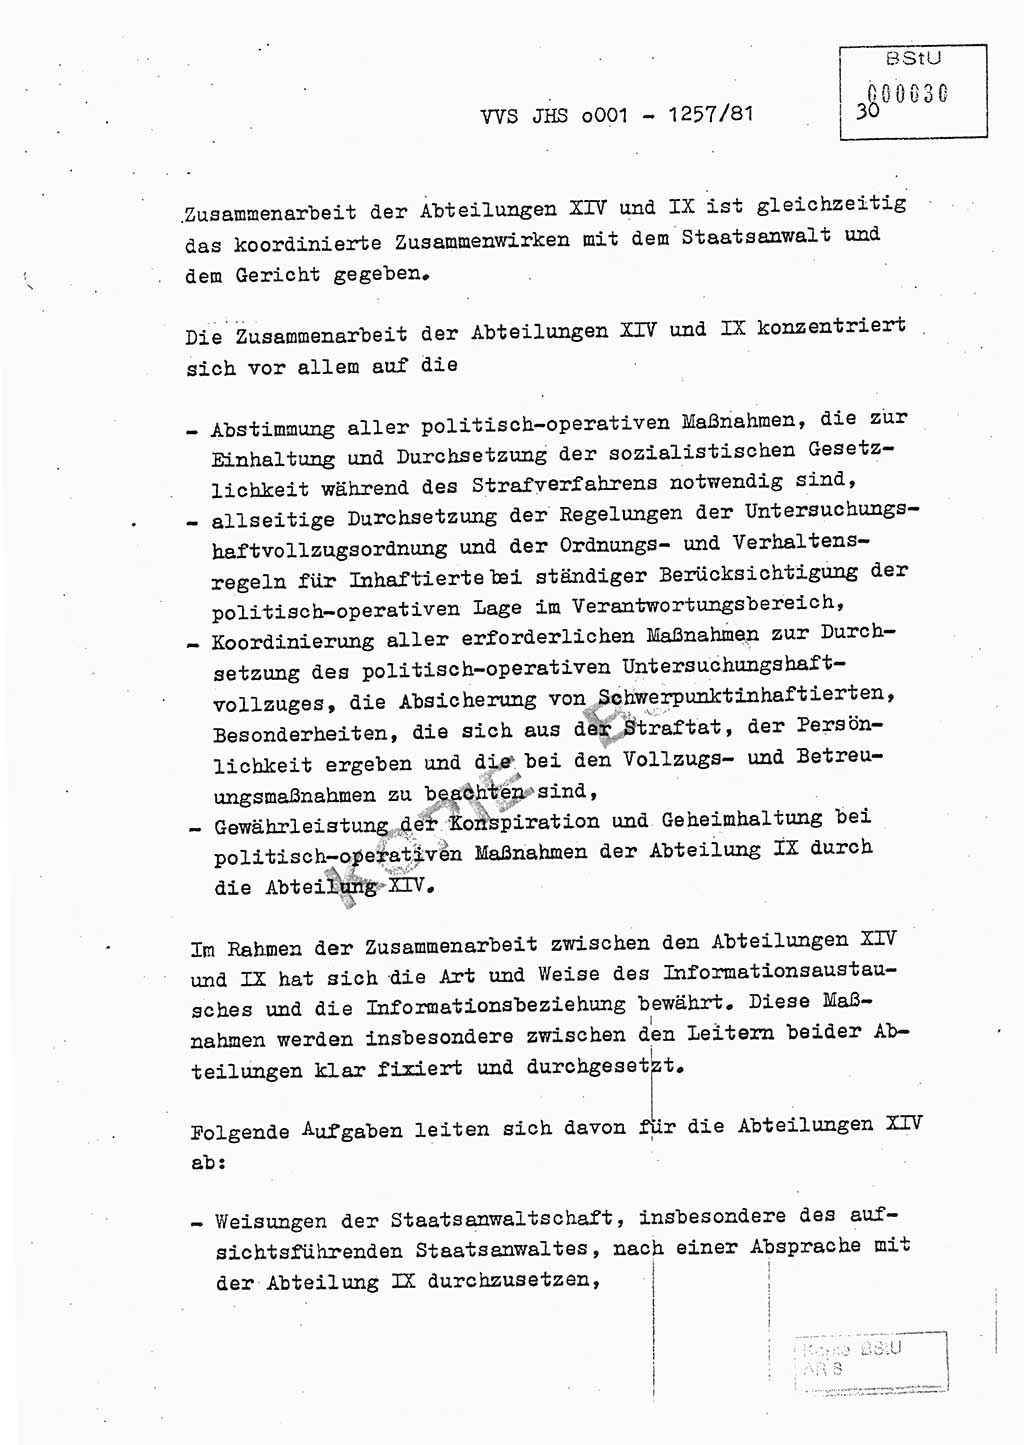 Fachschulabschlußarbeit Unterleutnant Dieter Möller (BV Rst. Abt. ⅩⅣ), Ministerium für Staatssicherheit (MfS) [Deutsche Demokratische Republik (DDR)], Juristische Hochschule (JHS), Vertrauliche Verschlußsache (VVS) o001-1257/81, Potsdam 1982, Seite 30 (FS-Abschl.-Arb. MfS DDR JHS VVS o001-1257/81 1982, S. 30)